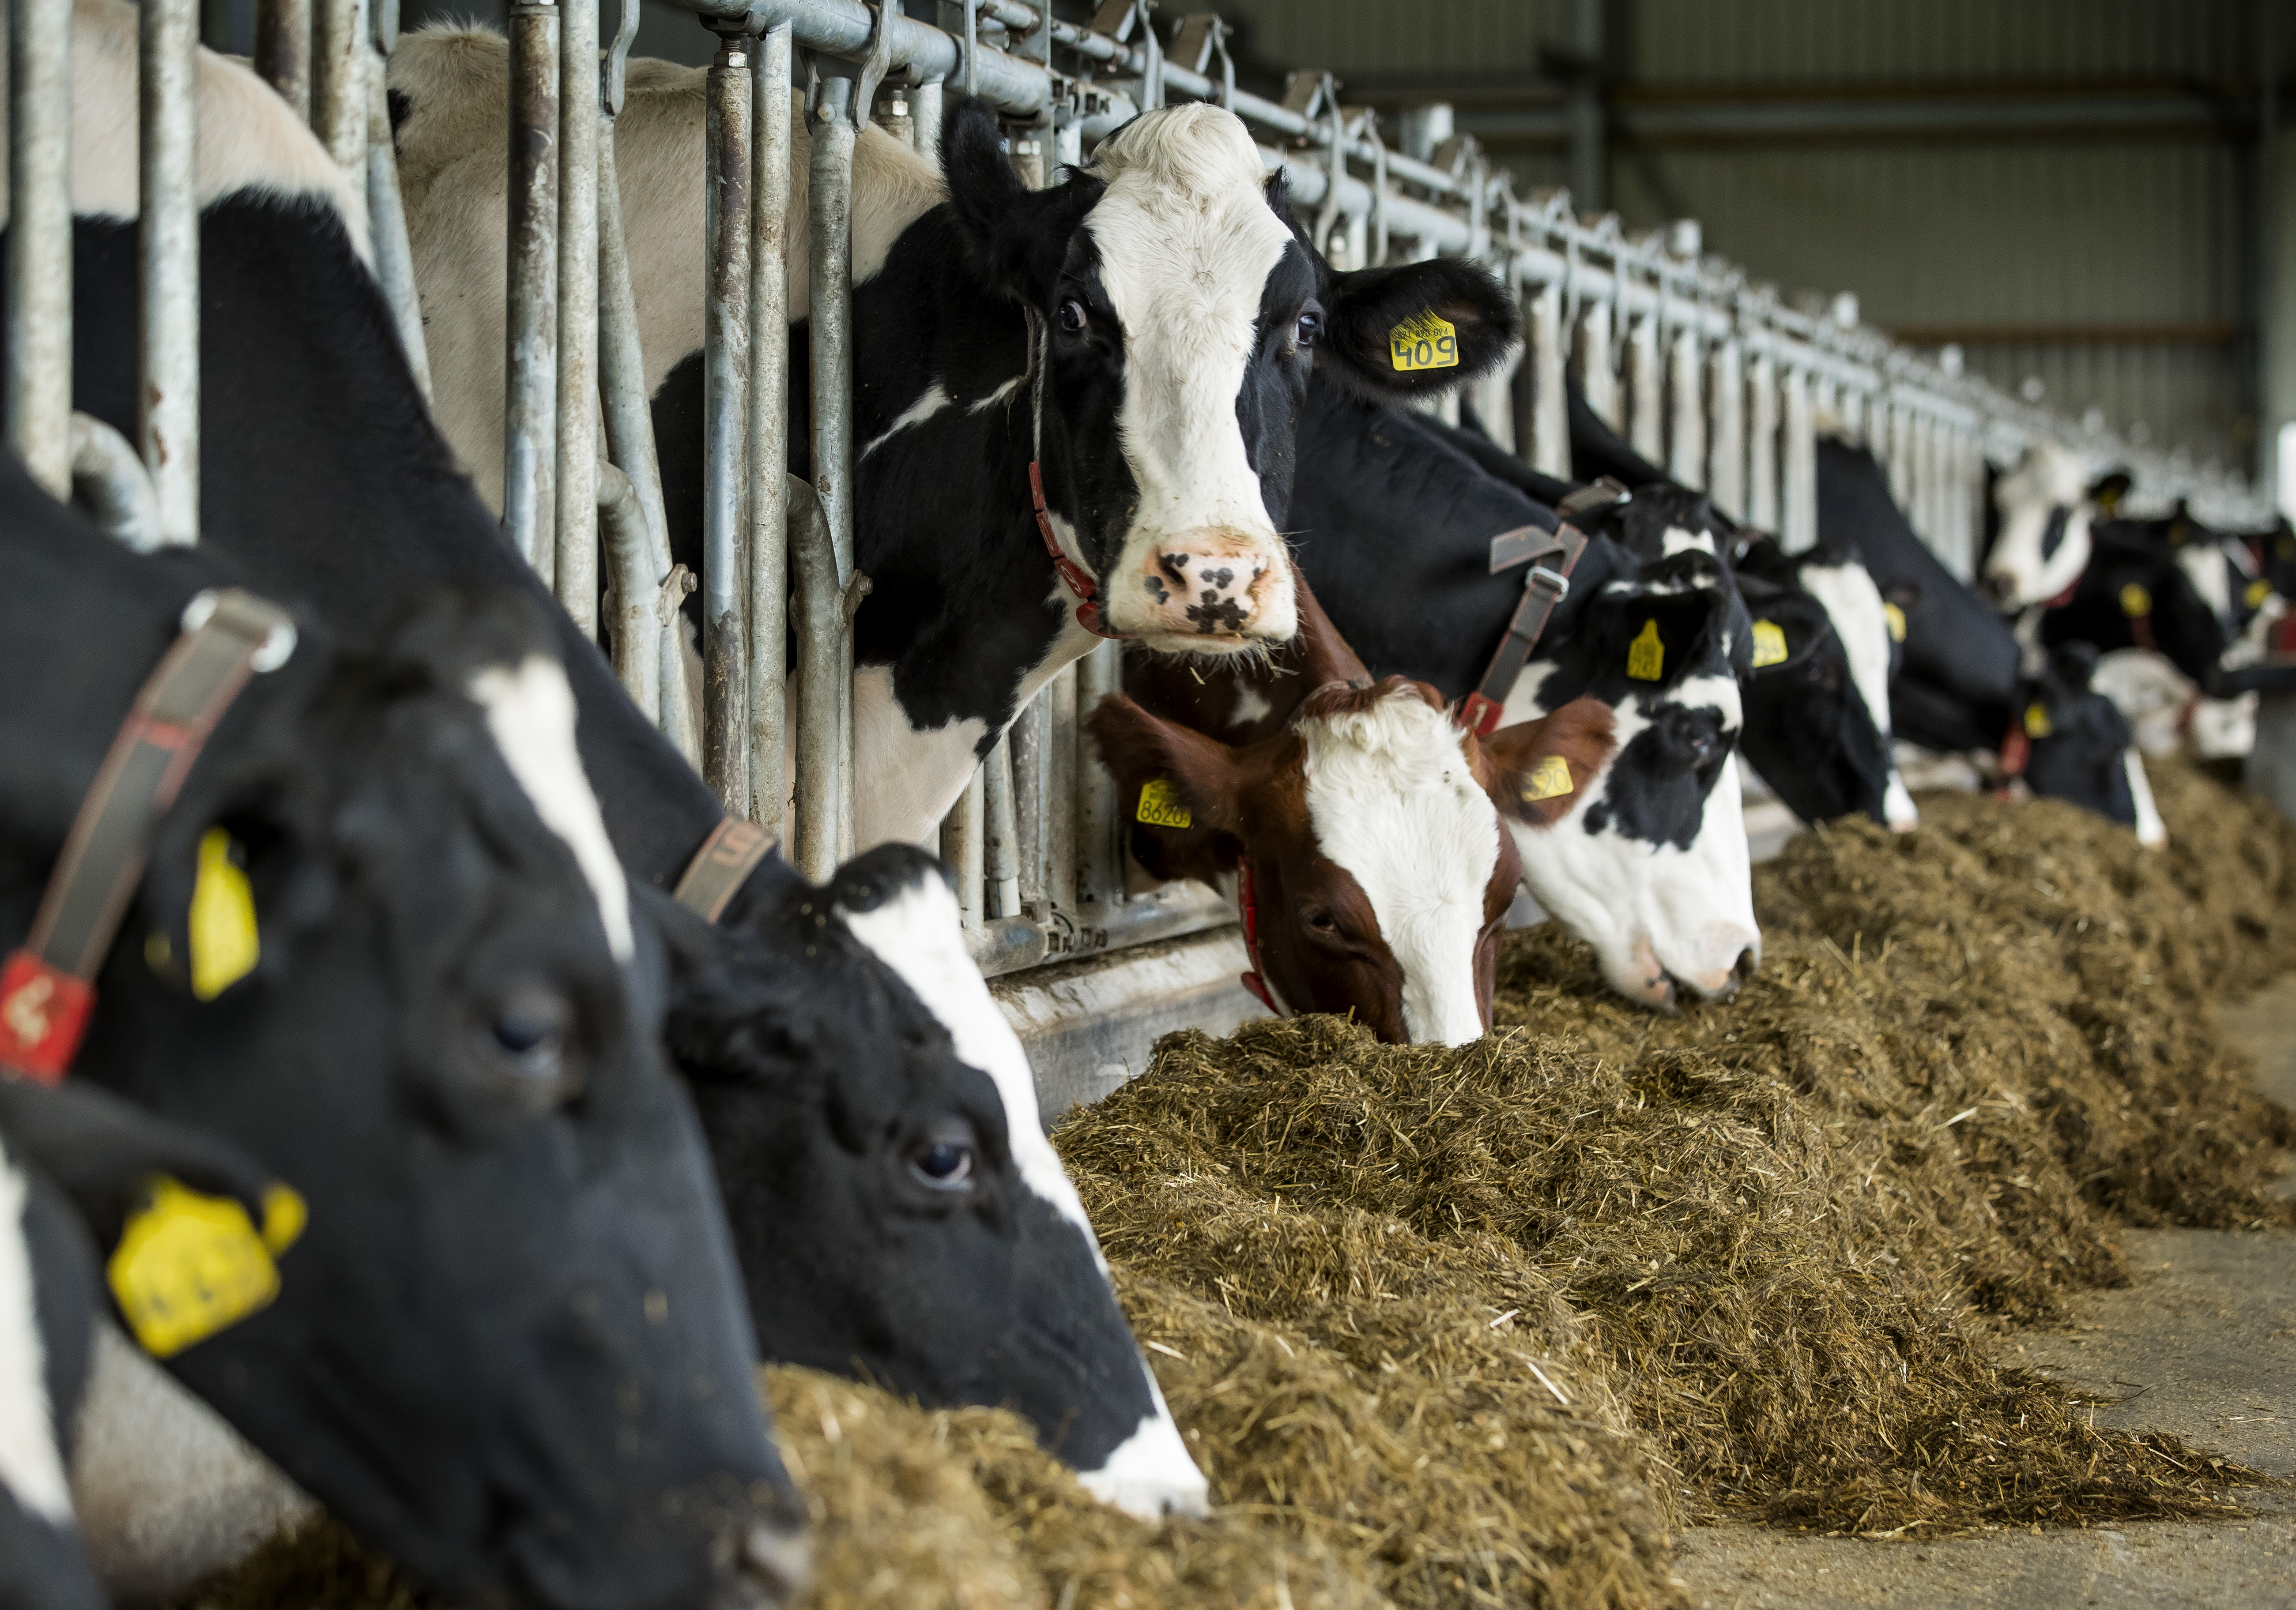 2016-11-17 16:01:37 MUIDERBERG - Koeien in de stal bij een melkveehouderij. ANP XTRA KOEN SUYK